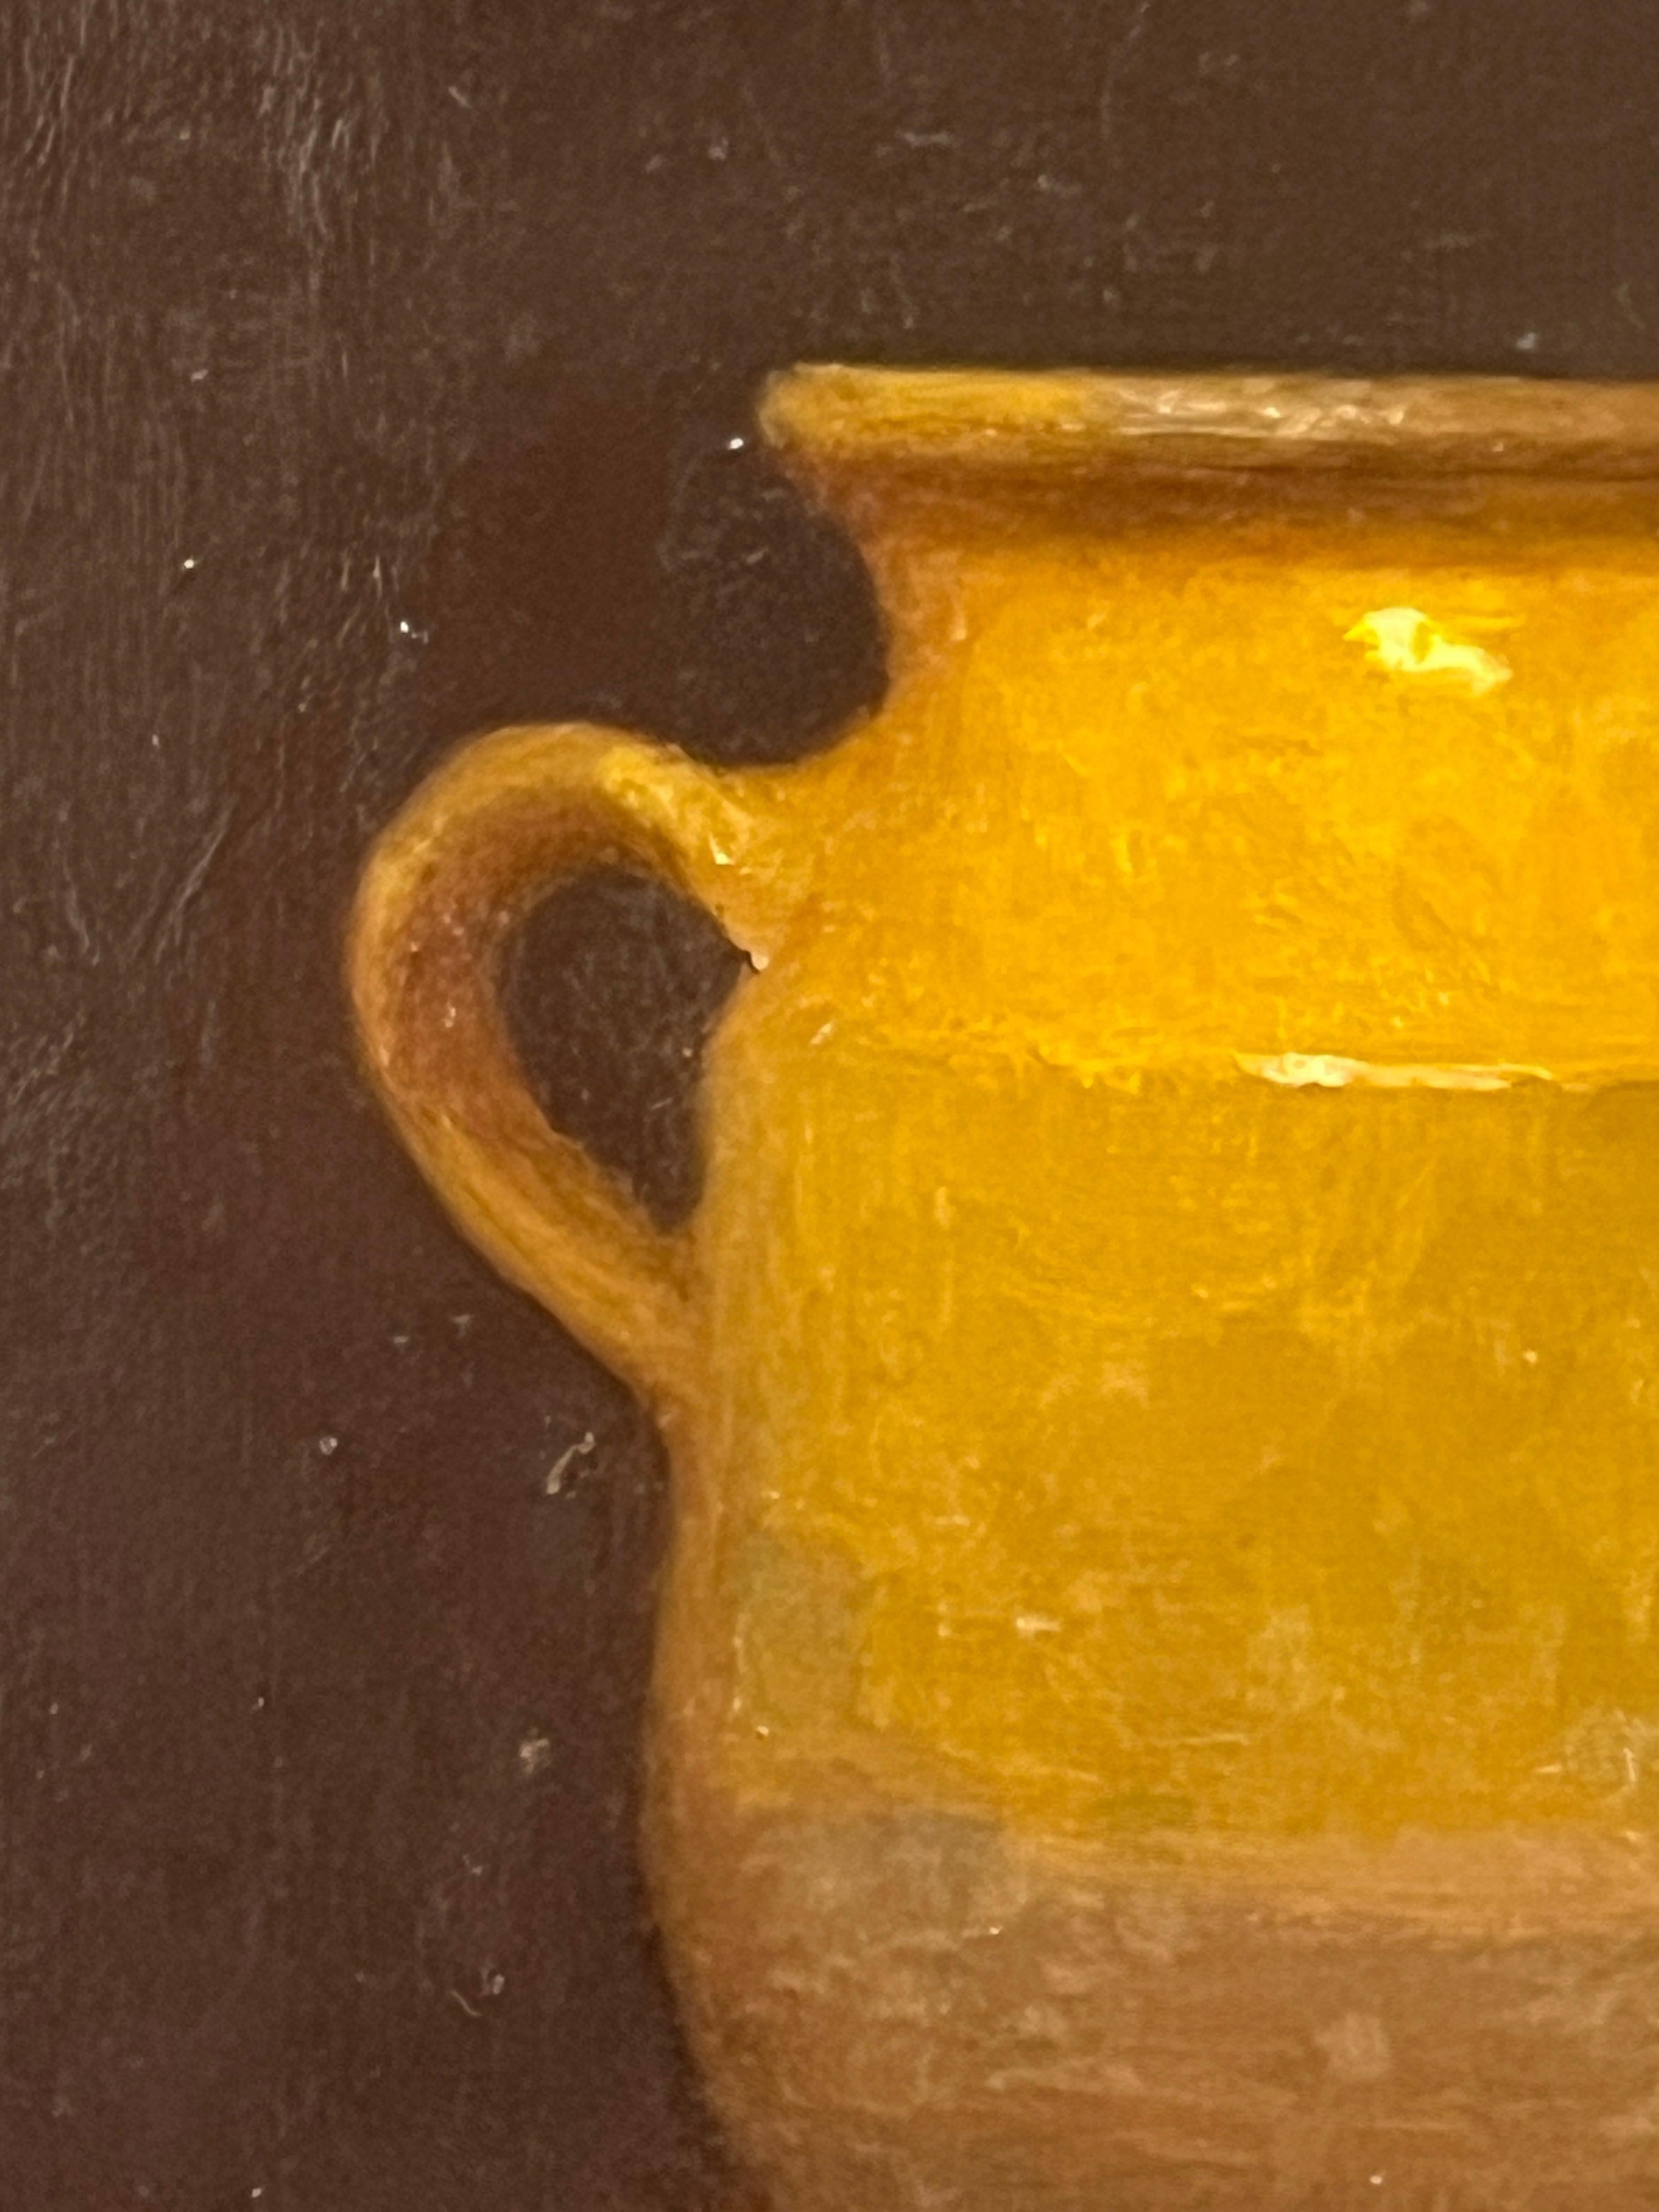 Le Pot de Confiture est une peinture à l'huile originale sur panneau. Il est encadré dans un cadre noir fait à la main avec une lèvre dorée. Les dimensions totales de l'œuvre encadrée sont d'environ 14x16 pouces. 

Le maître de la nature morte Dale